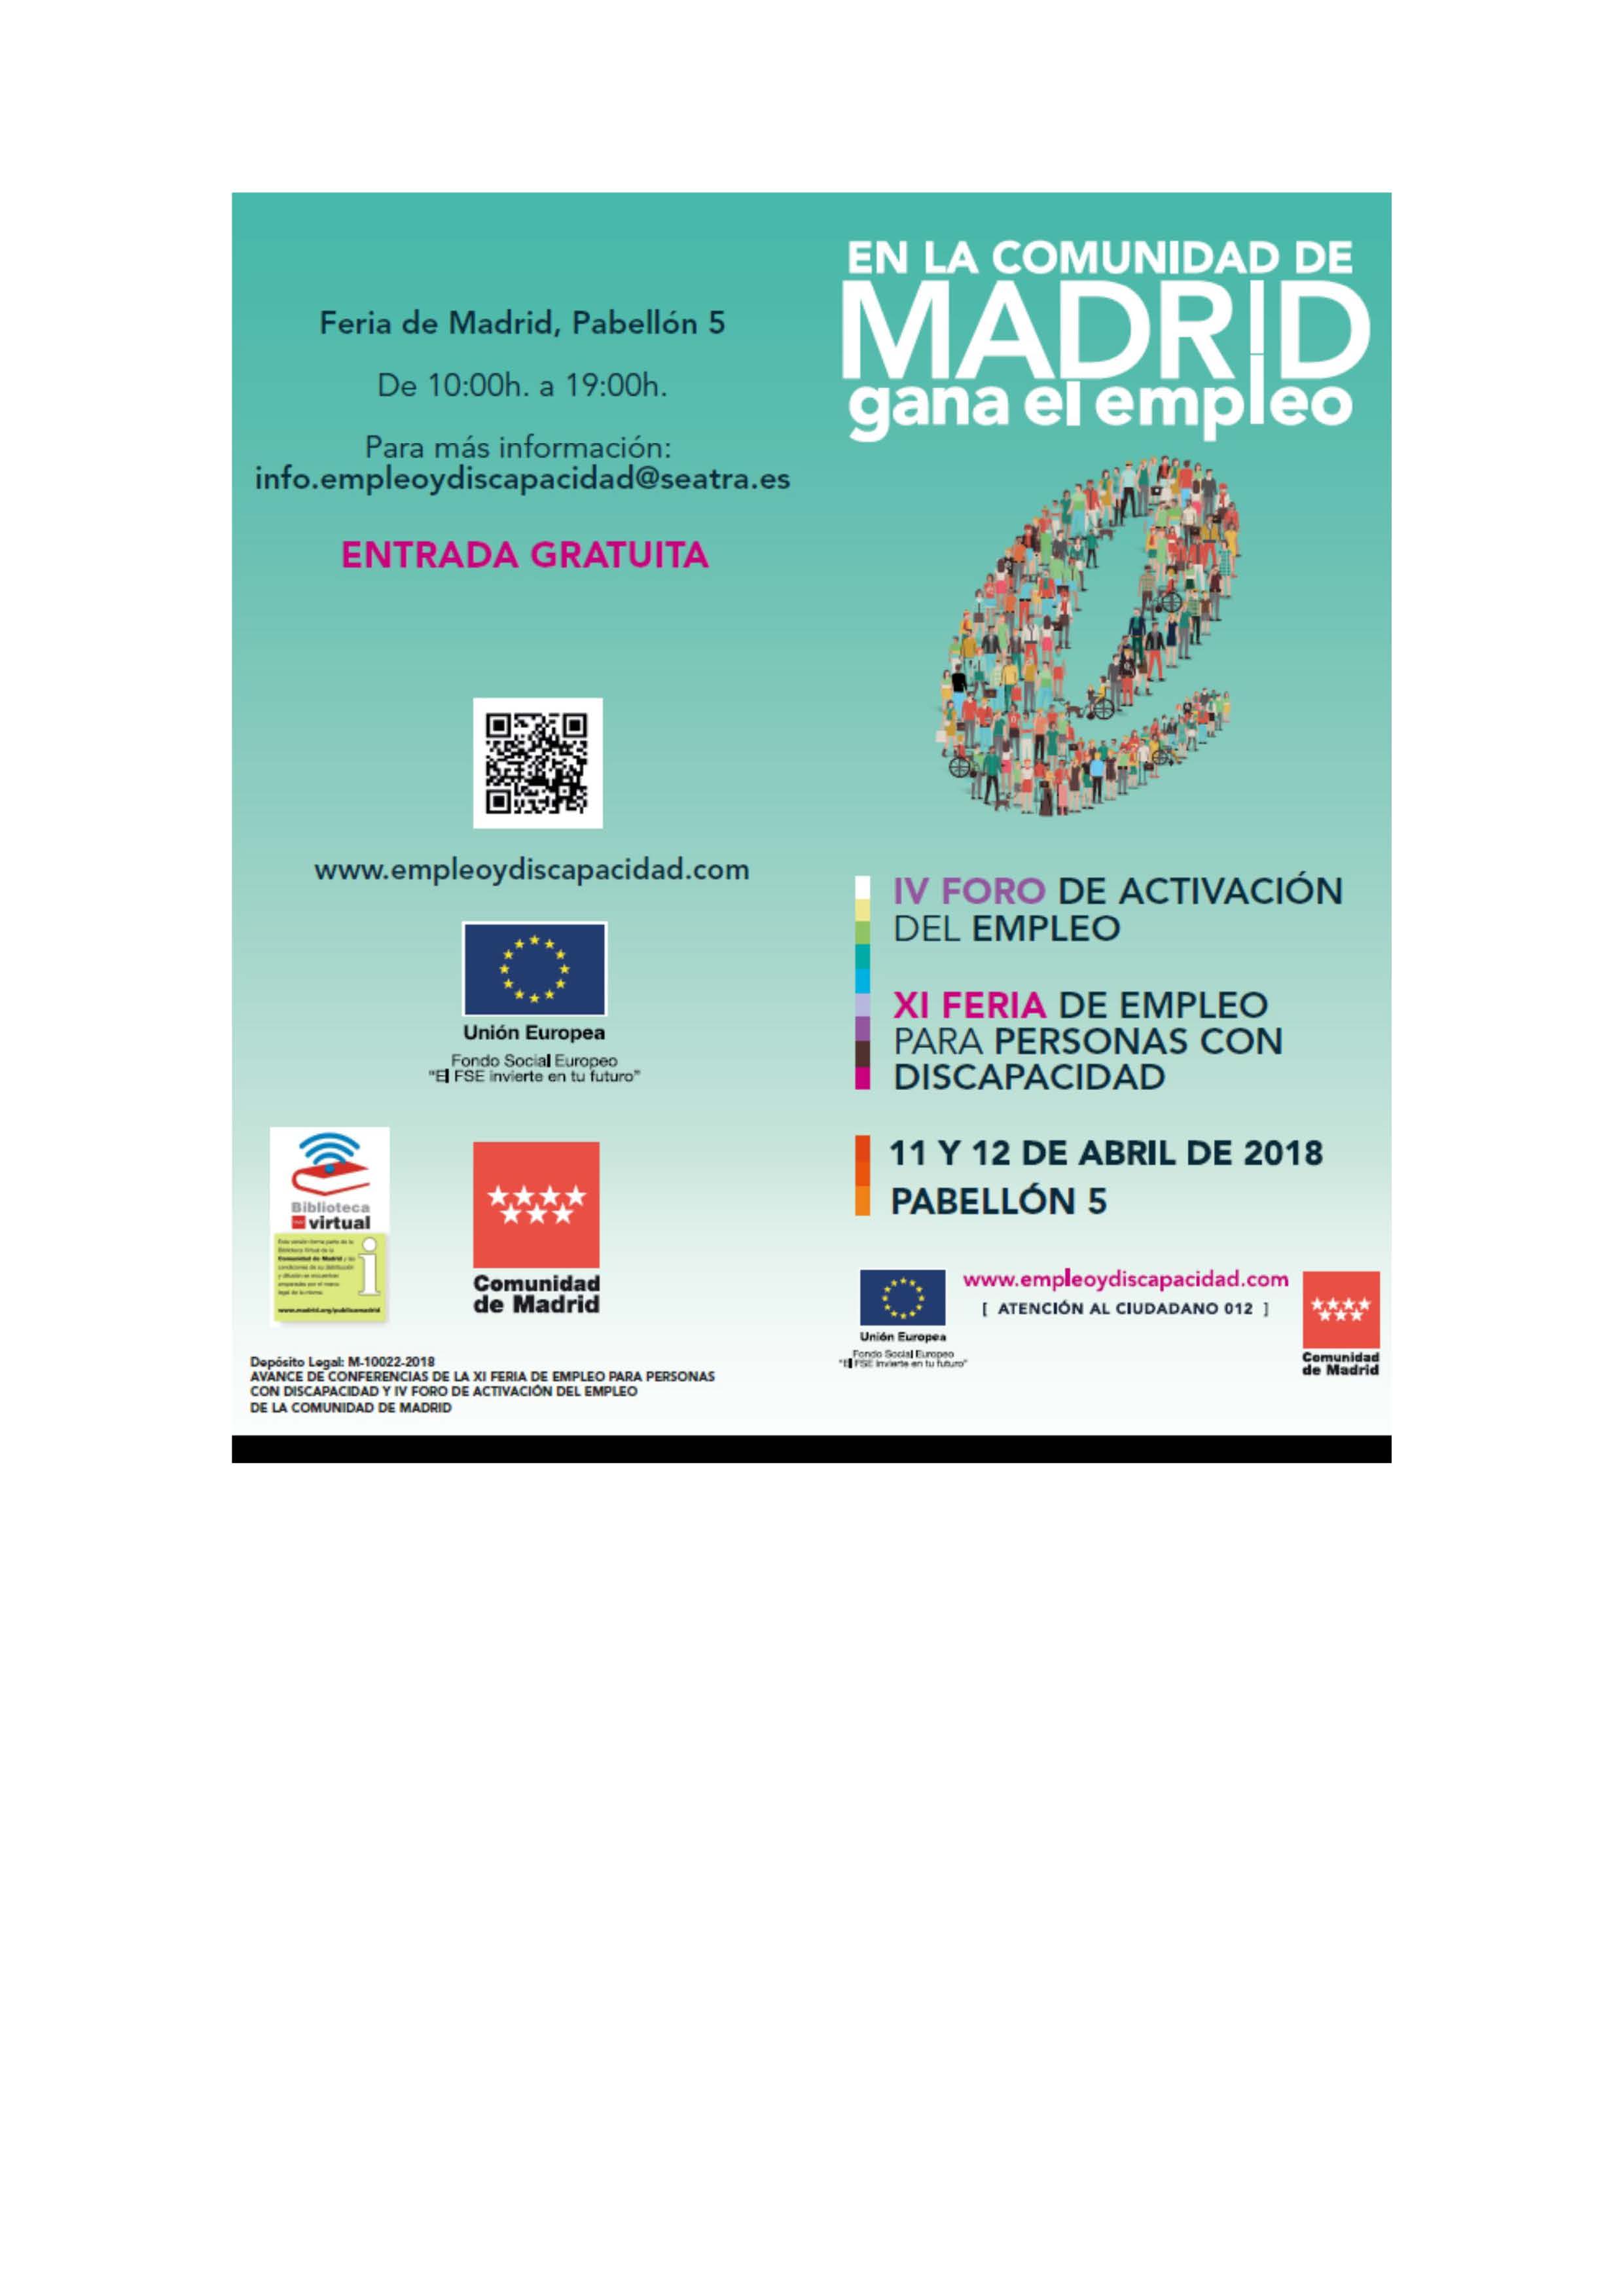 Portada de Avance de conferencias de la XI Feria de Empleo para Personas con Discapacidad y IV Foro de Activación del Empleo de la Comunidad de Madrid